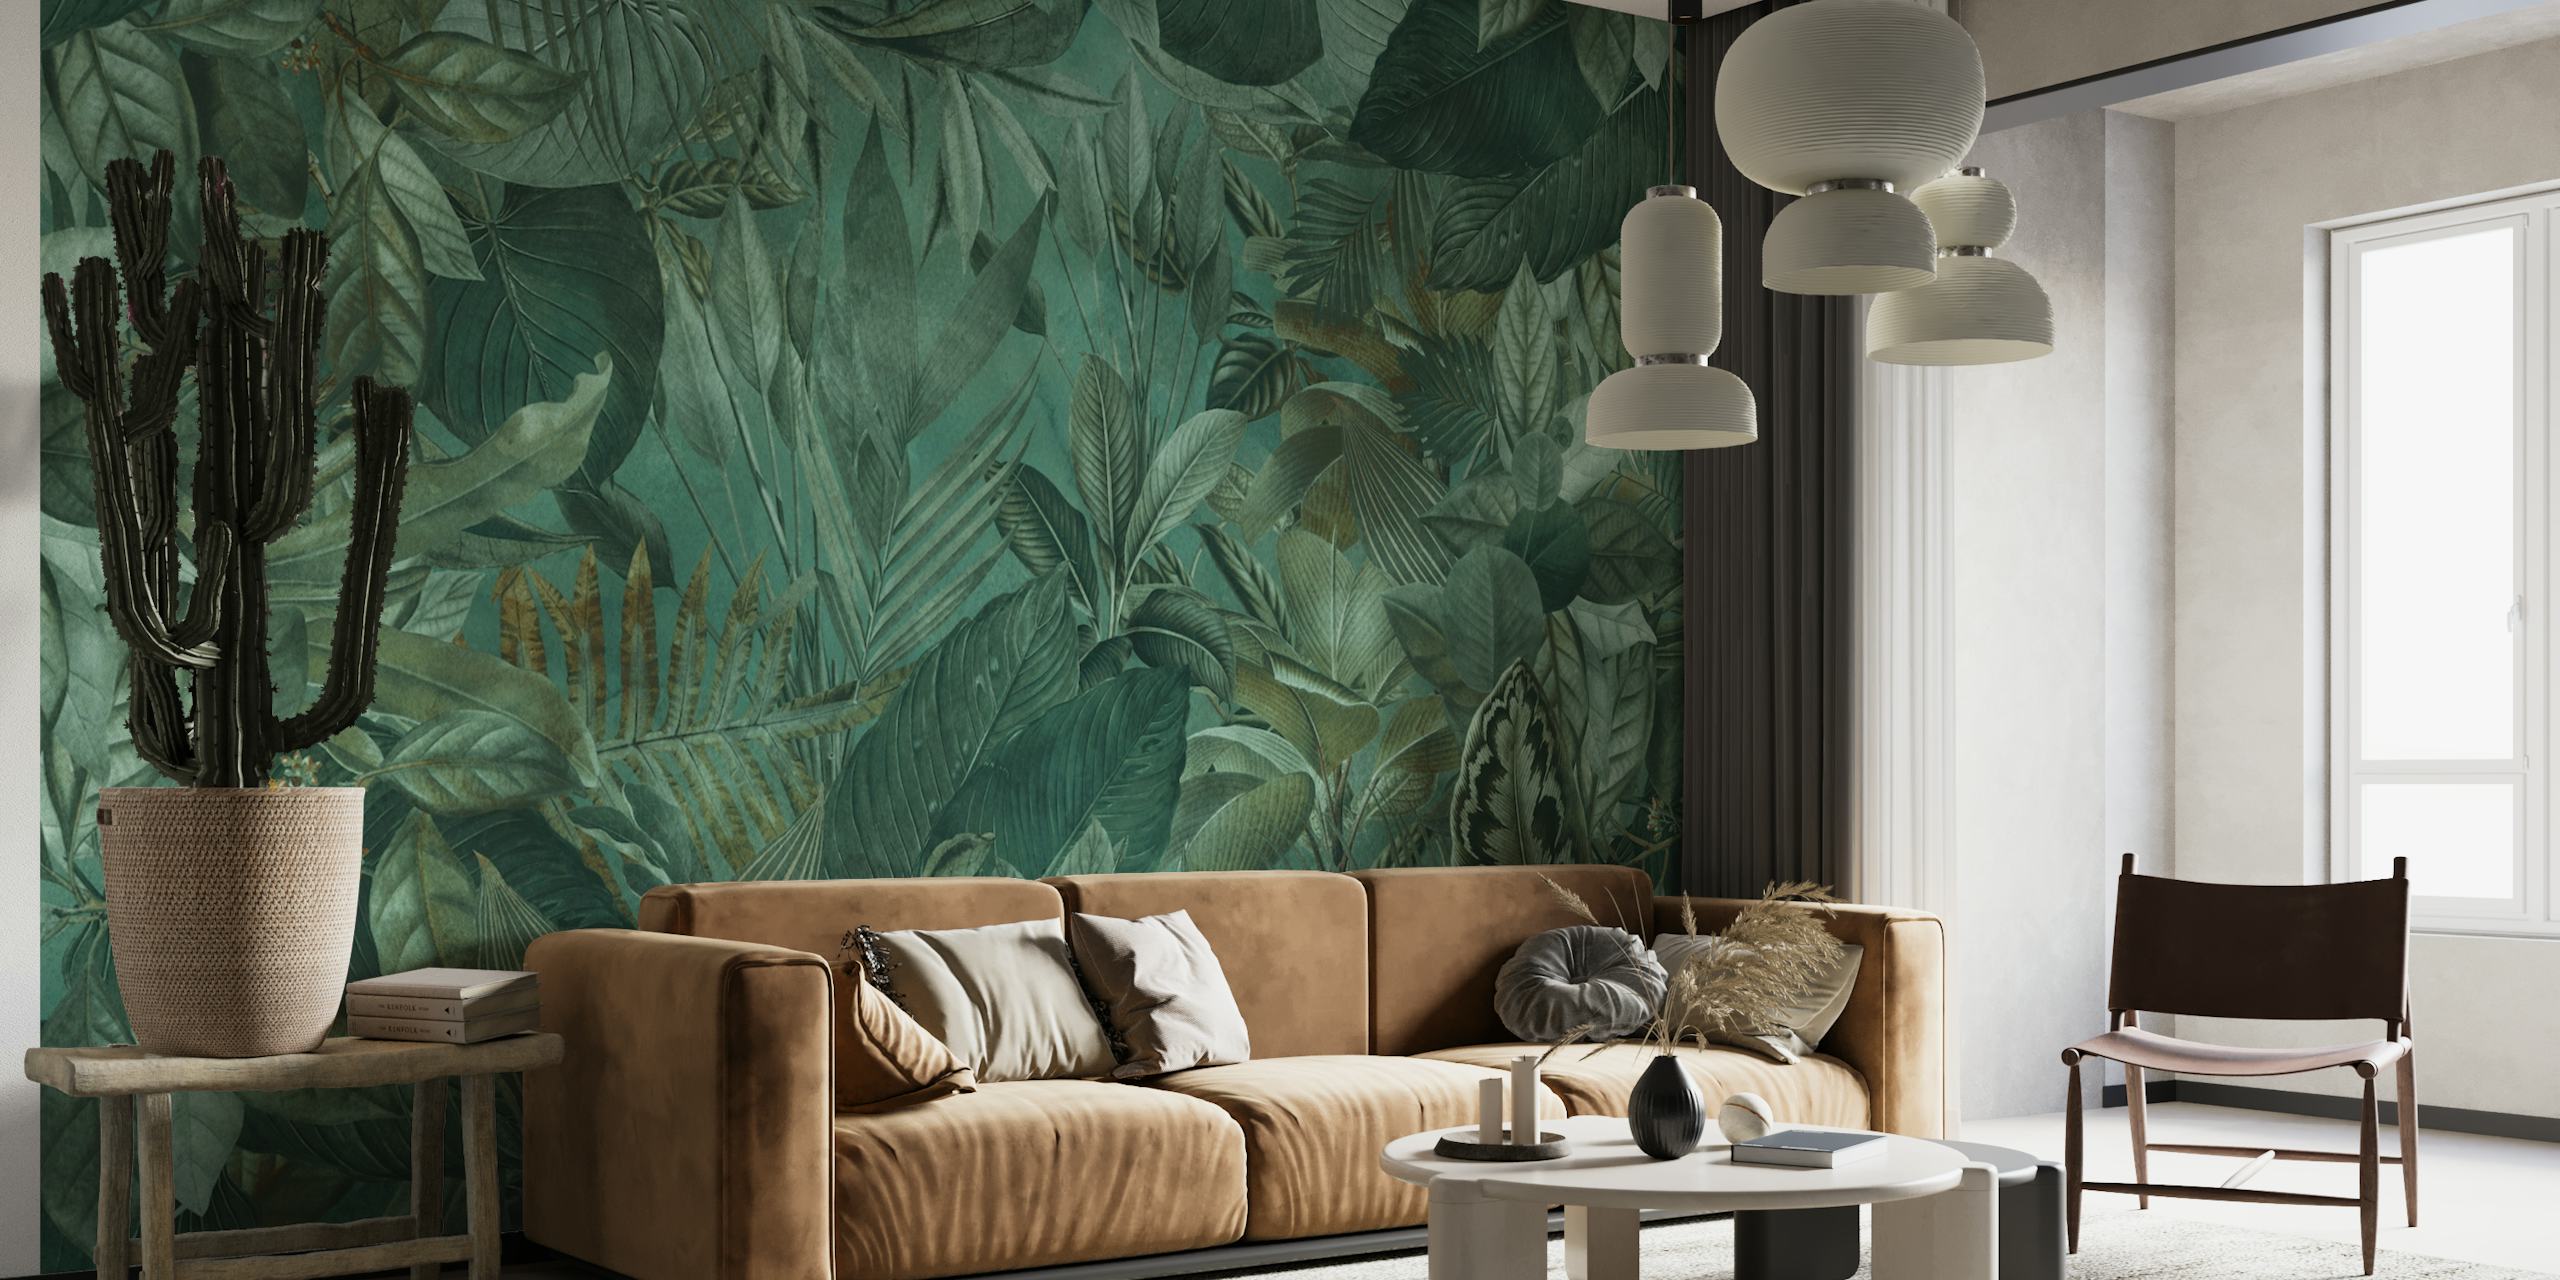 Fotomural vinílico de parede com tema de selva tropical verde esmeralda com folhagem densa e padrões florais